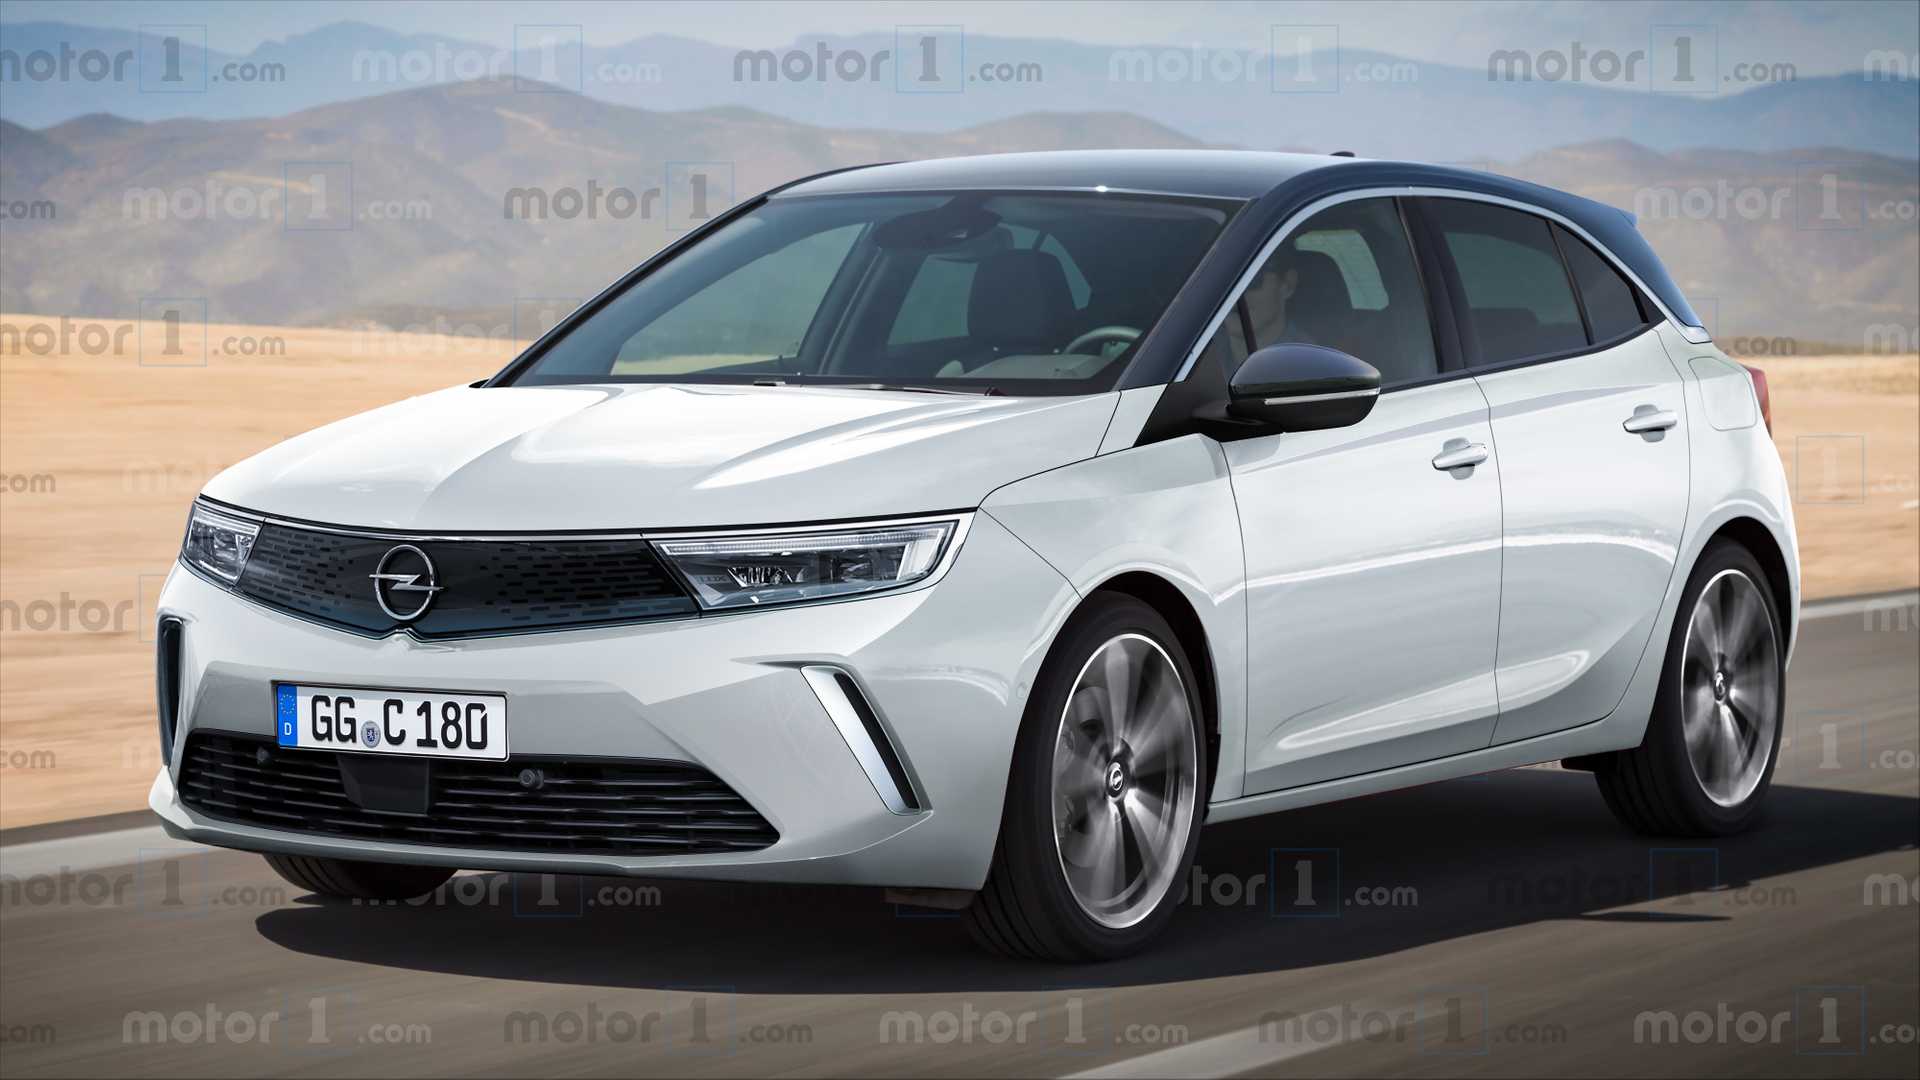 Tak prawdopodobnie będzie wyglądał nowy Opel Astra